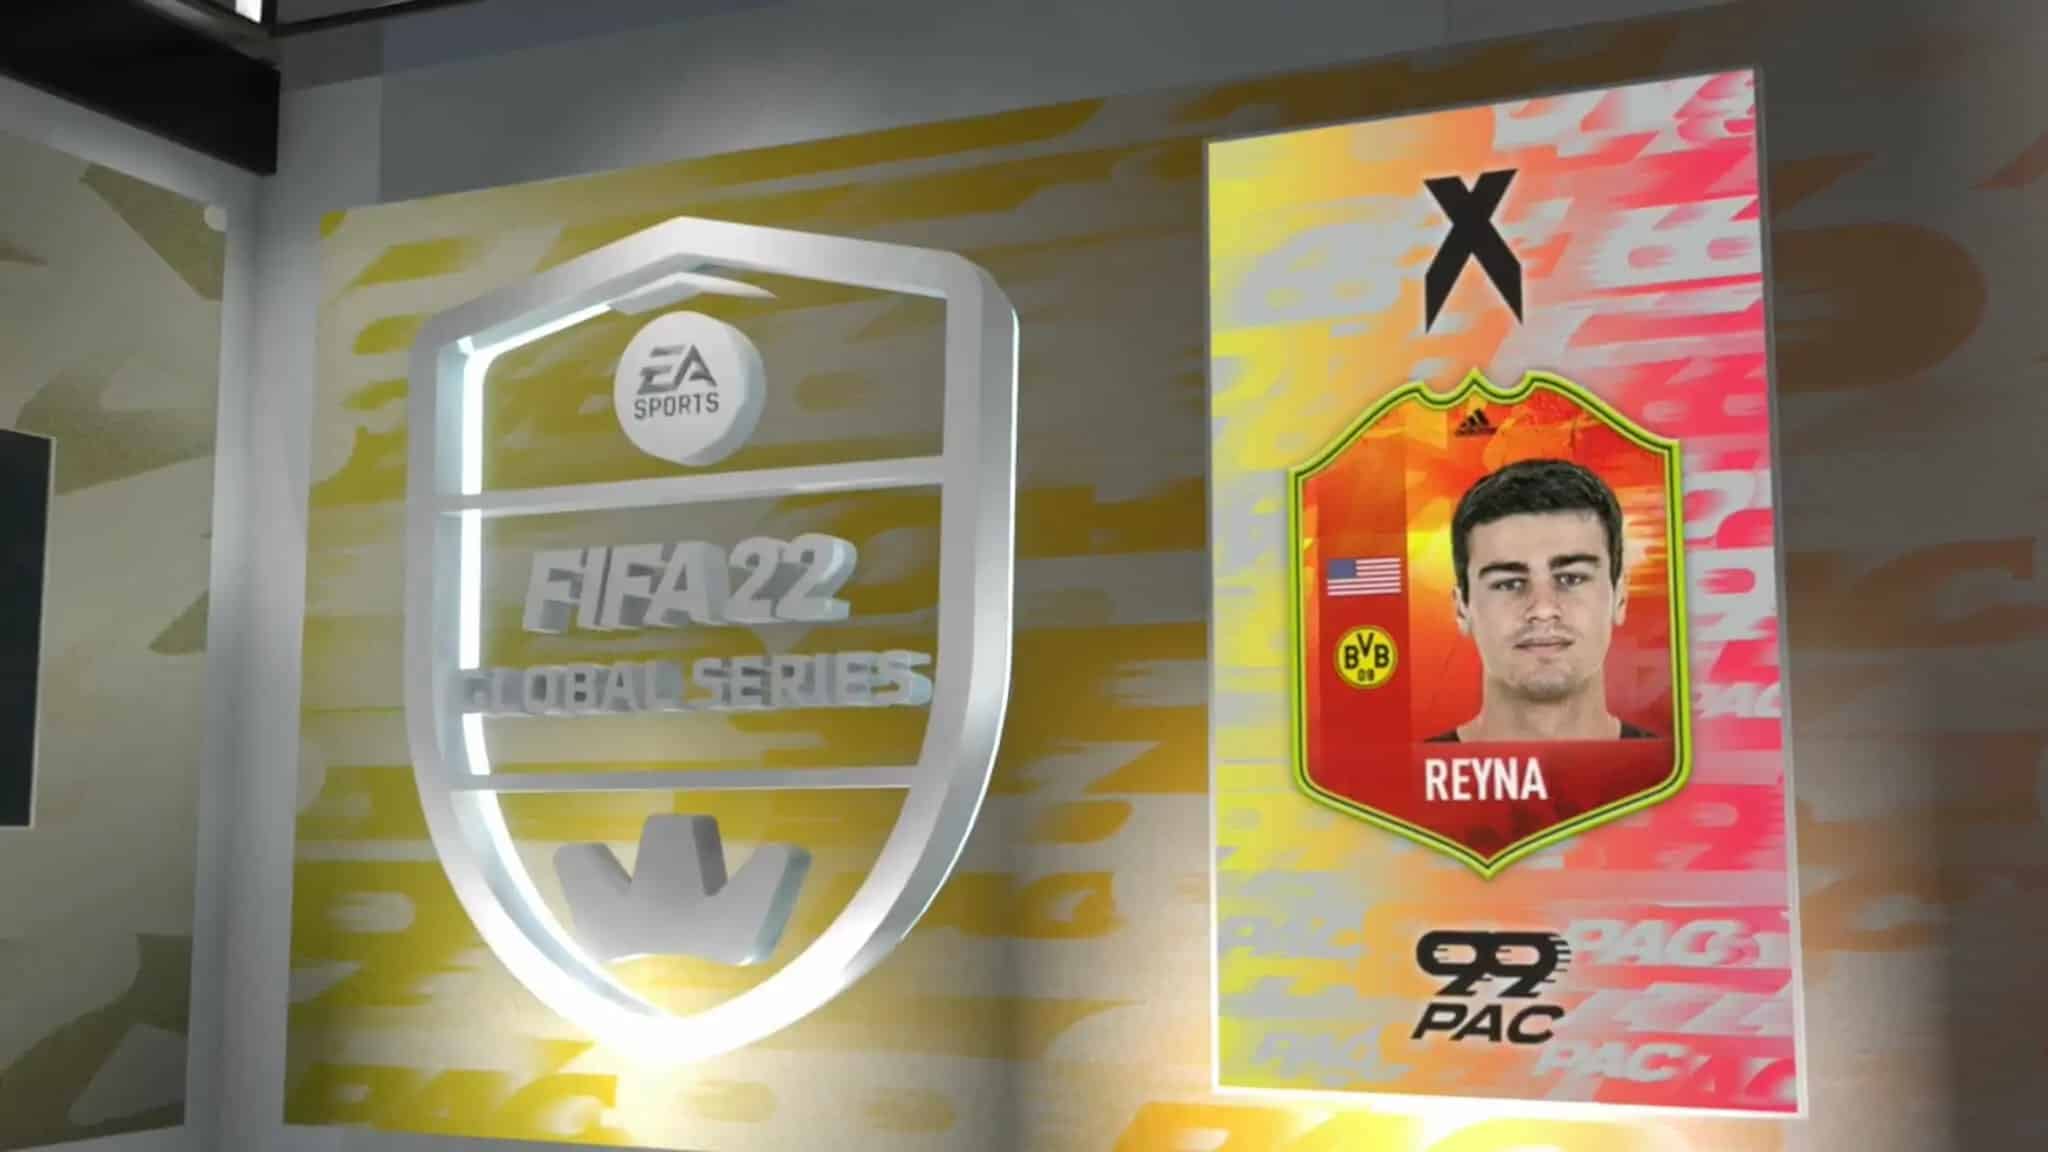 Reyna Adidas card on FIFA 22 stream.